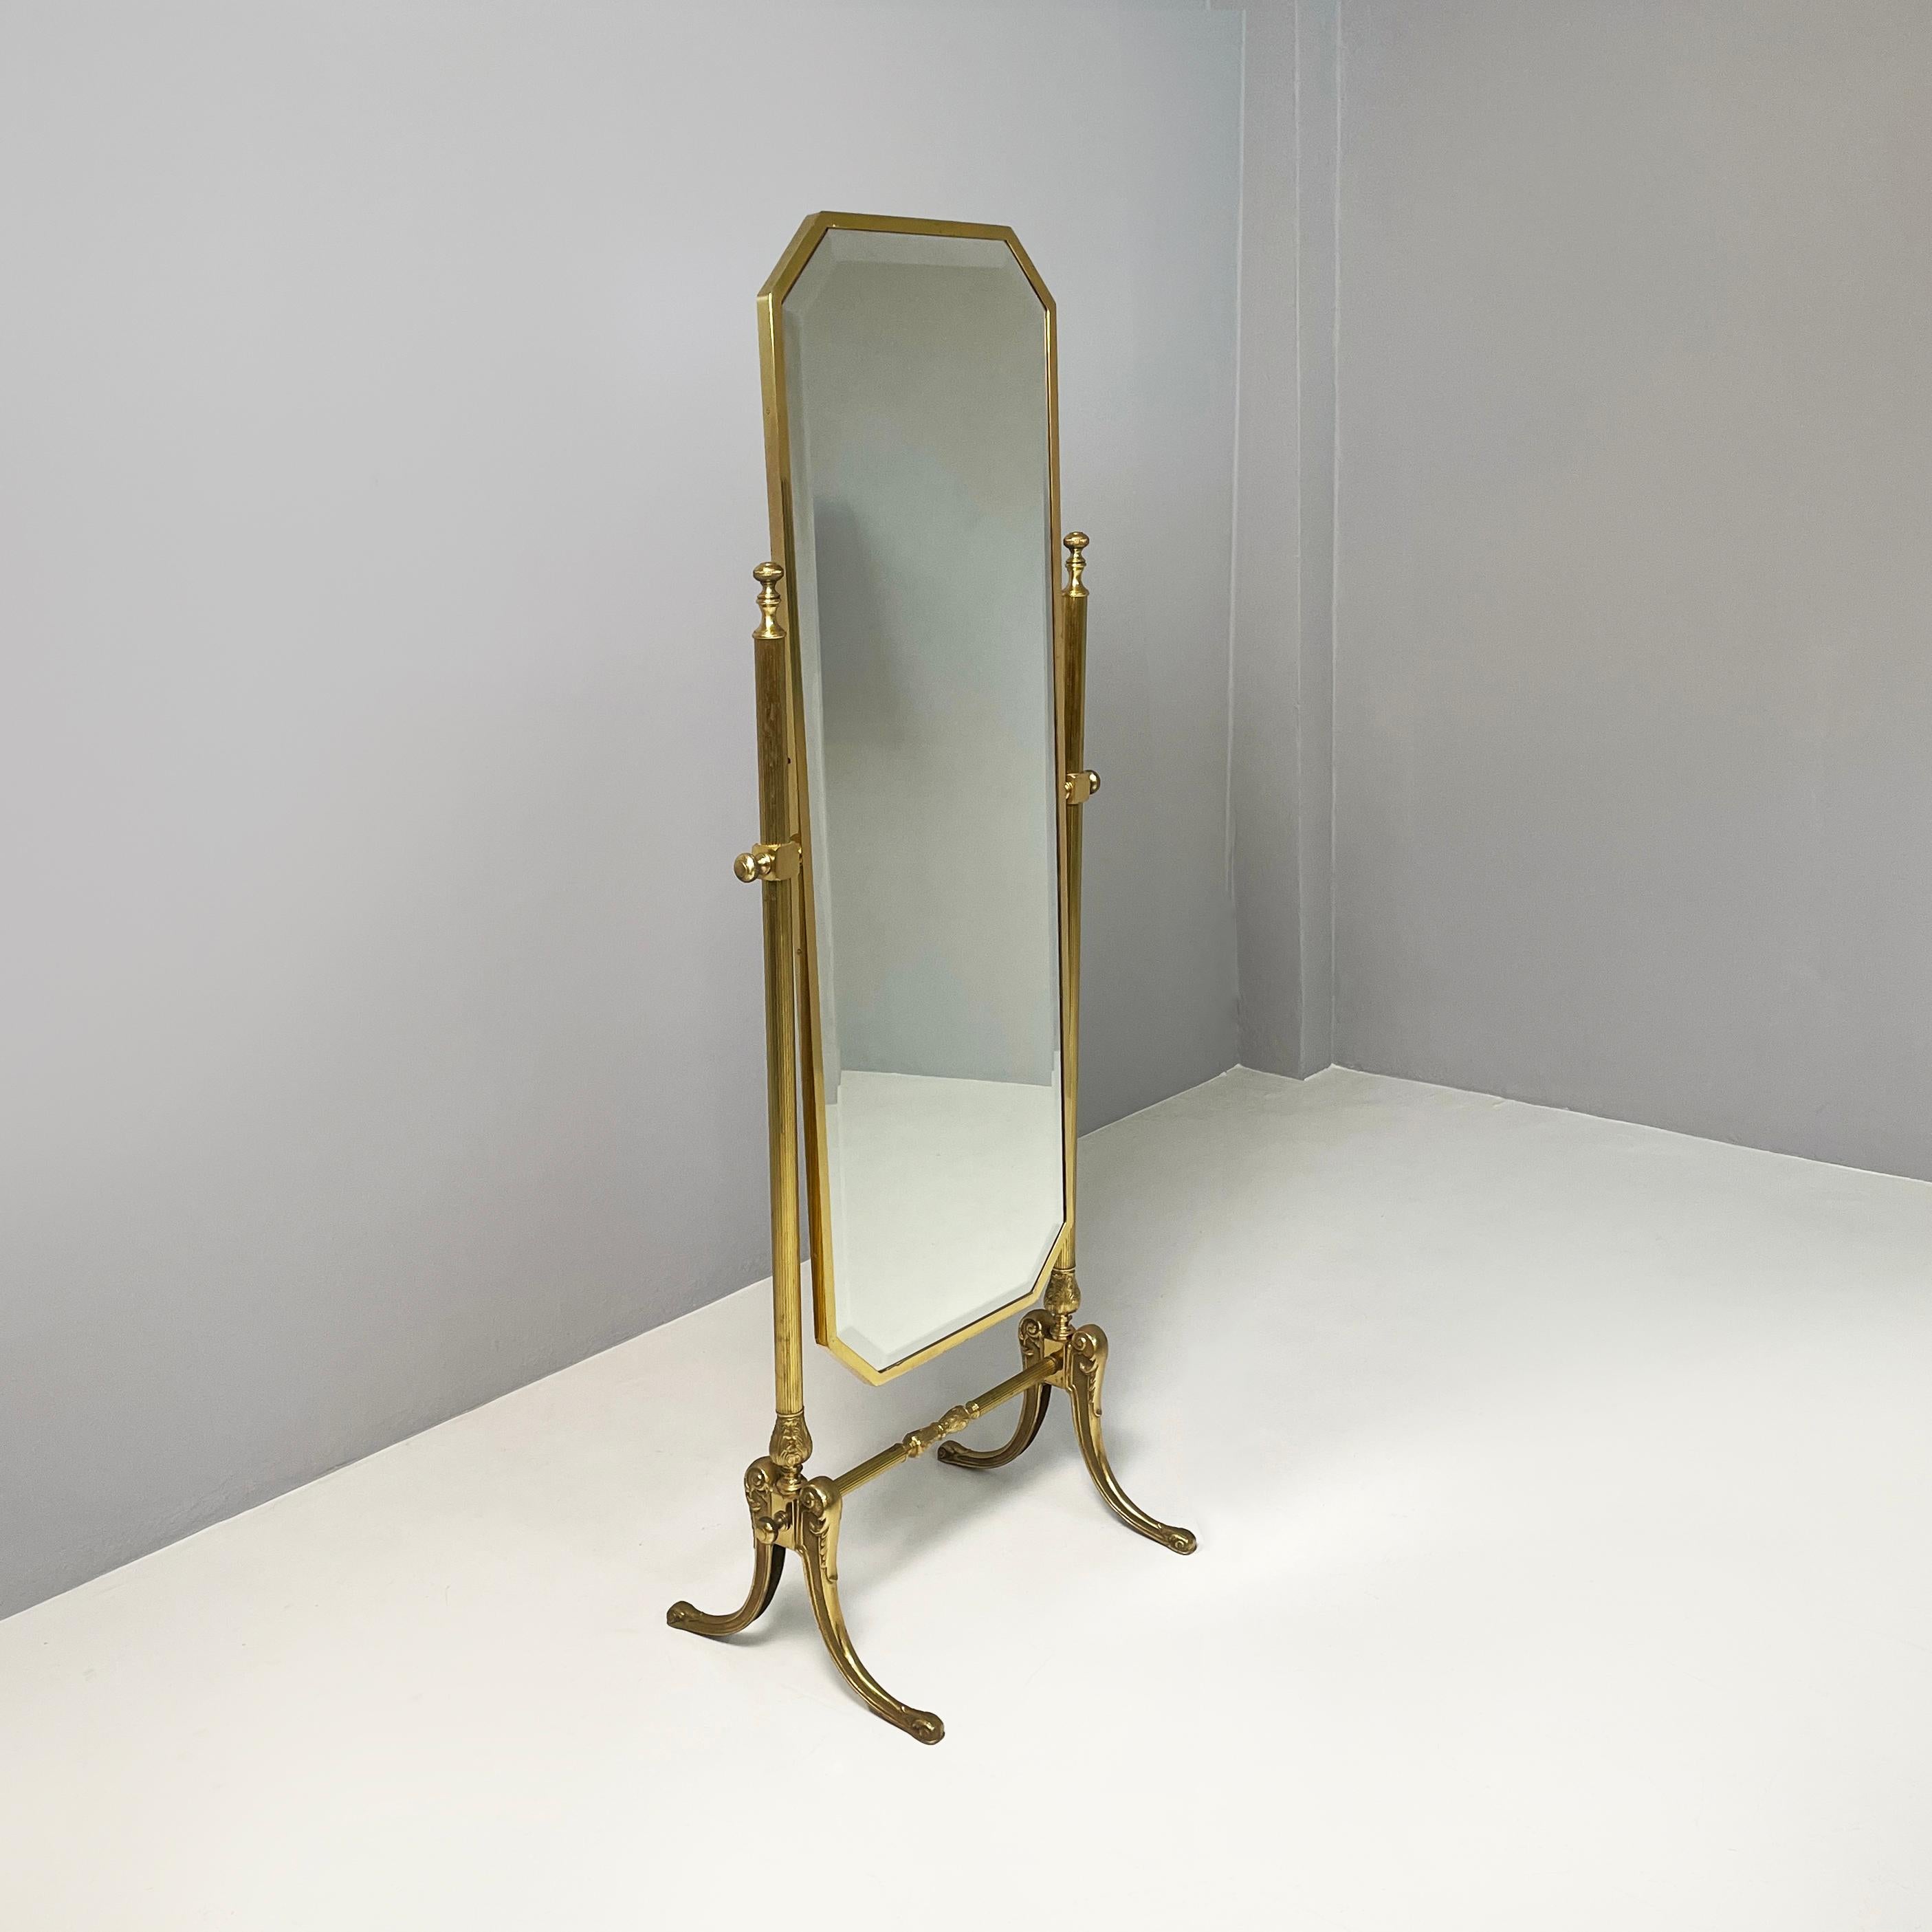 Italienisches Art déco Selbsttragender, kippbarer Bodenspiegel in Bass, 1940er Jahre
Durchgehender und selbsttragender Bodenspiegel aus Messing. Der achteckige Spiegel ist kippbar, d.h. es ist möglich, seine Neigung einzustellen. Die Struktur hat